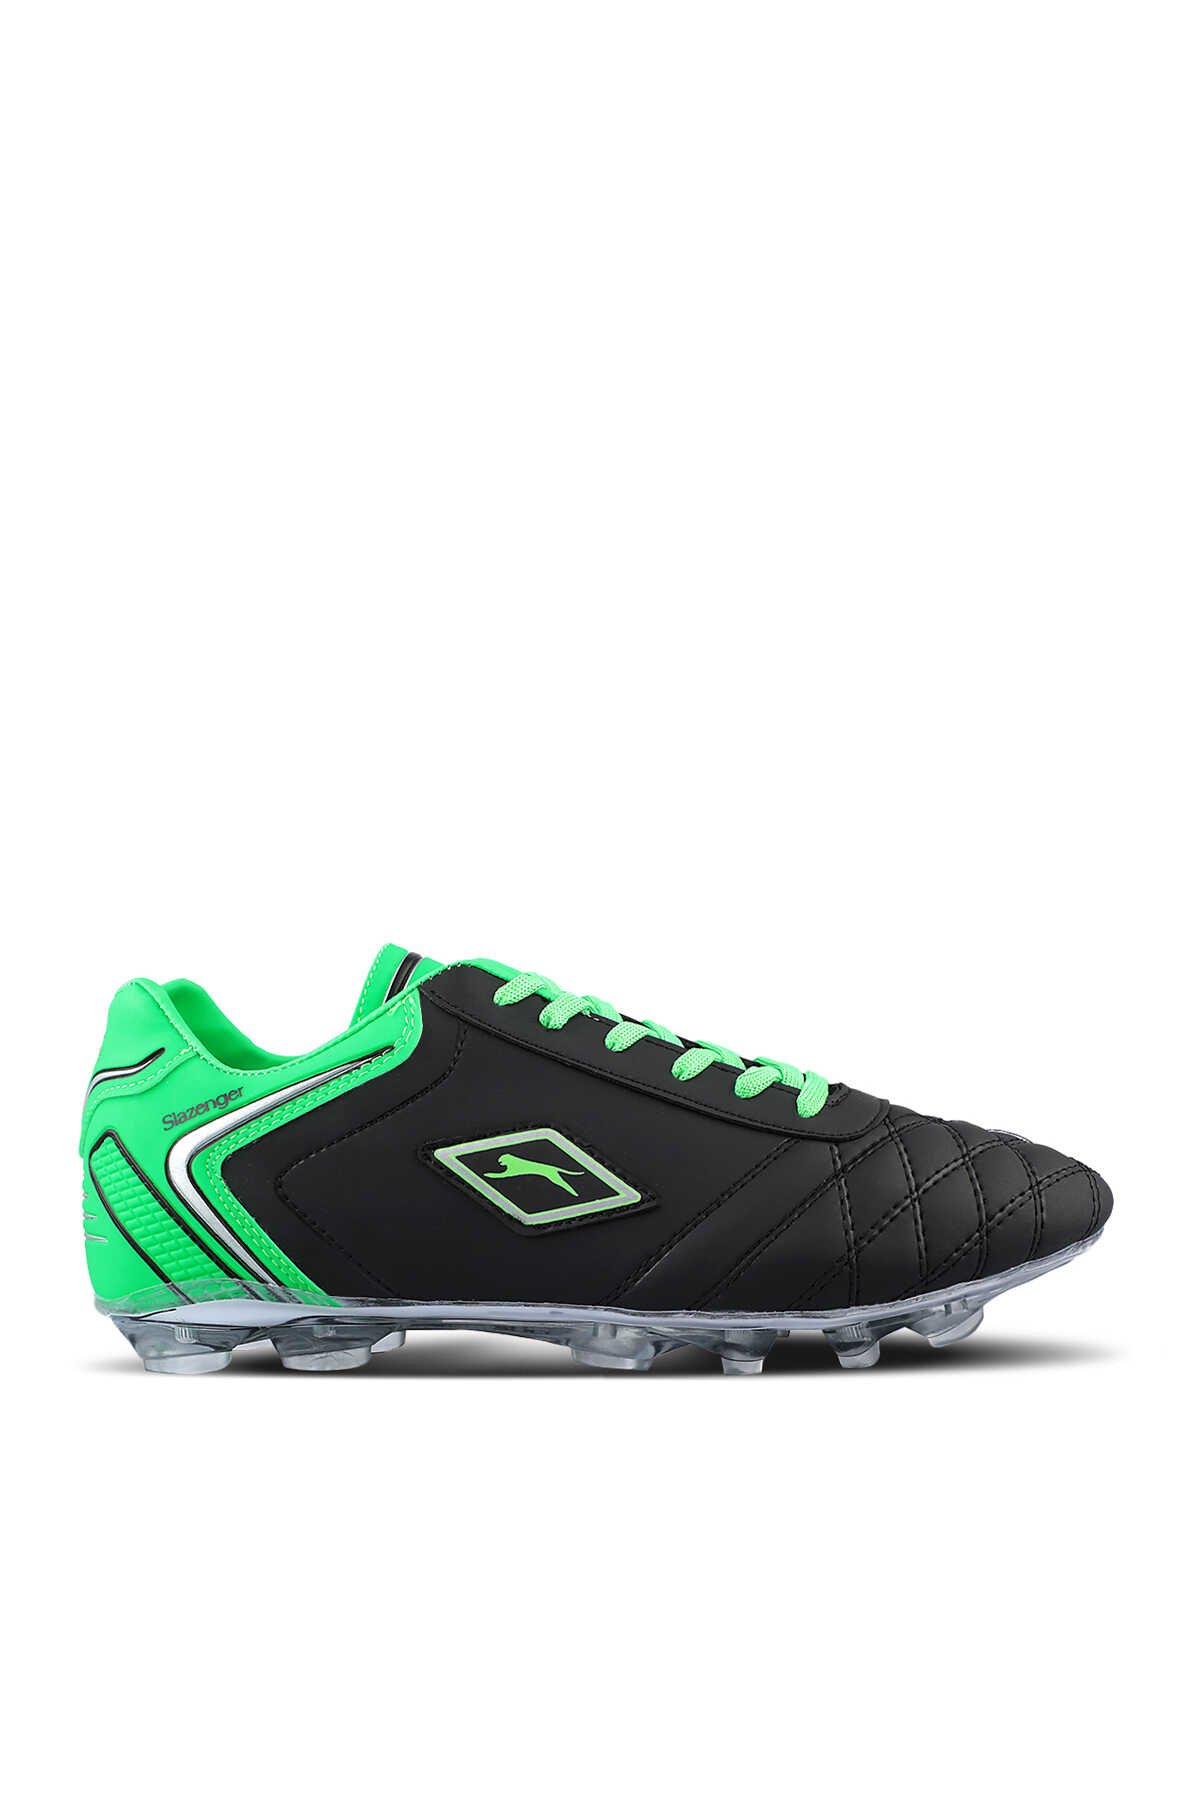 Slazenger - Slazenger HUGO KR Futbol Erkek Çocuk Krampon Ayakkabı Siyah / Yeşil